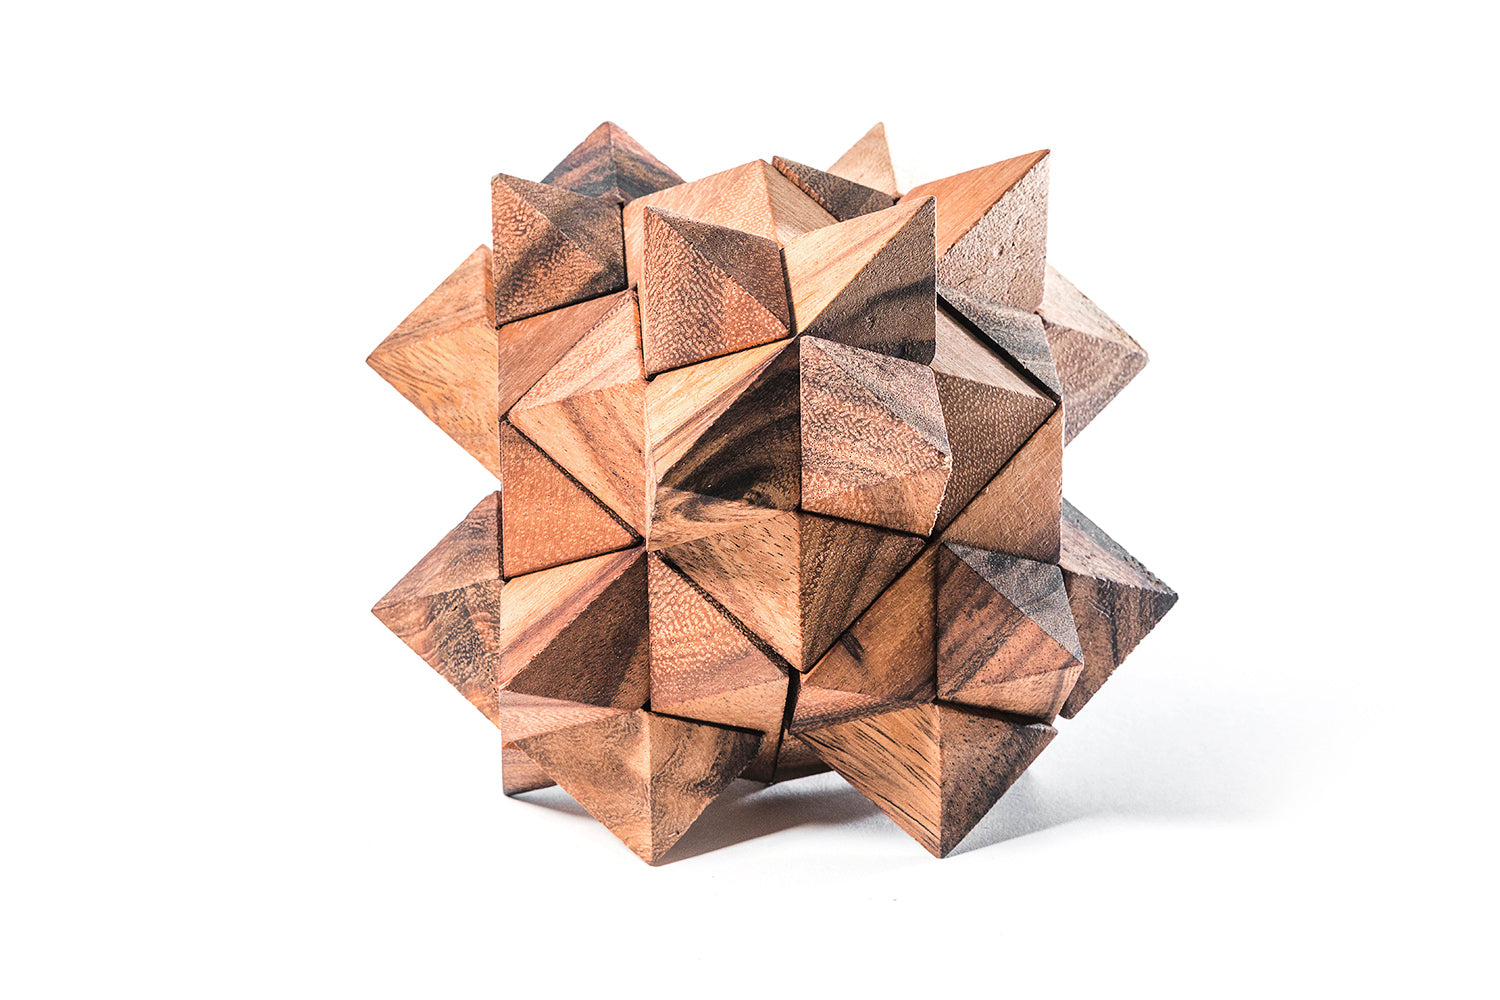 6 piece wooden Star puzzle makes a 12 point interlocking star